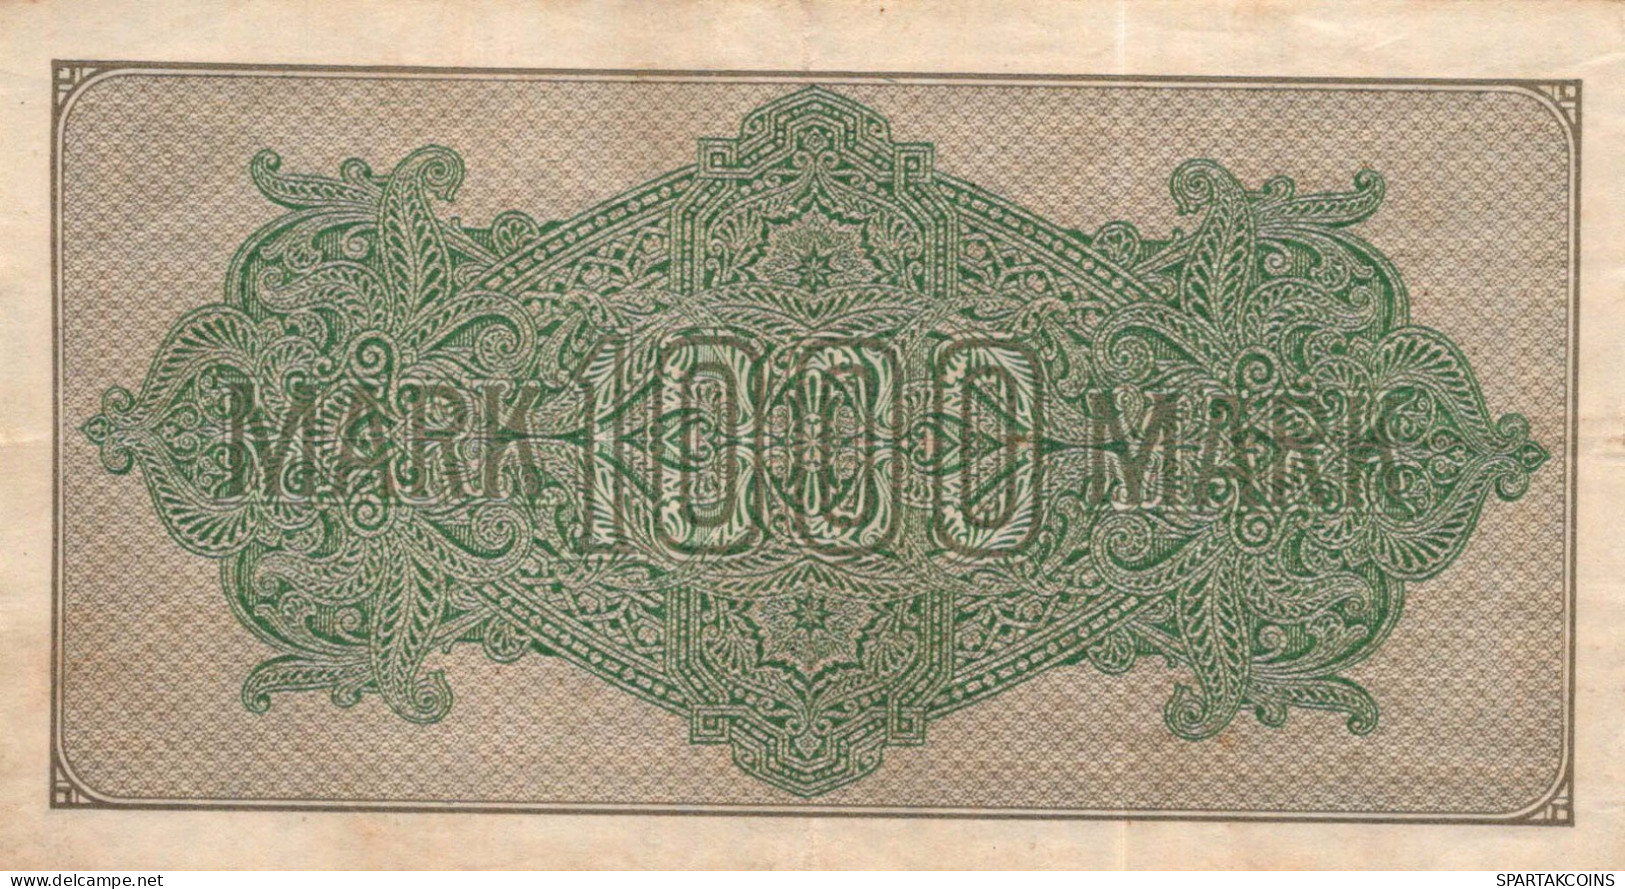 1000 MARK 1922 Stadt BERLIN DEUTSCHLAND Papiergeld Banknote #PL416 - [11] Local Banknote Issues